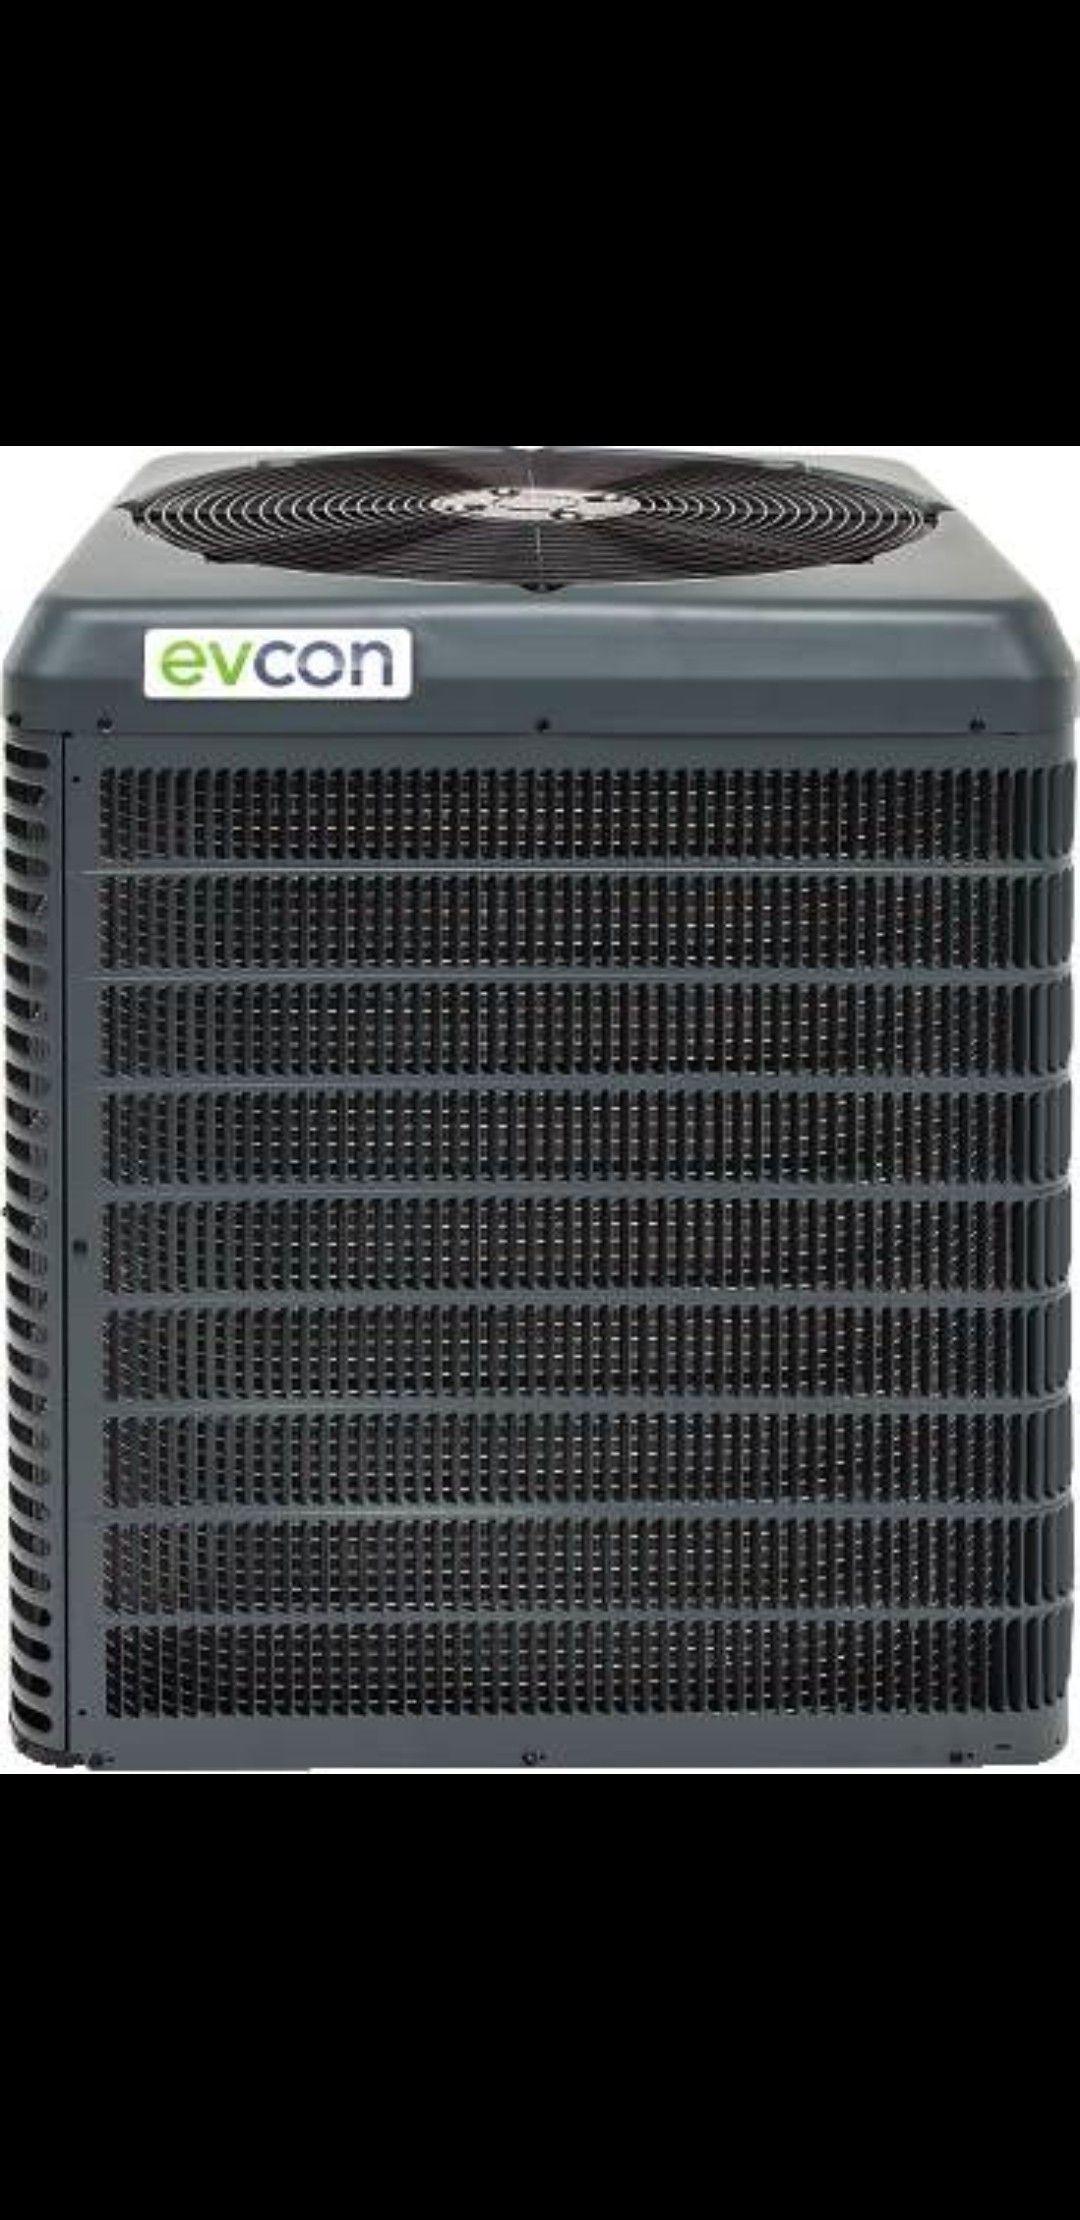 Evcon / Coleman AC condenser 3.5 ton 14 SEER